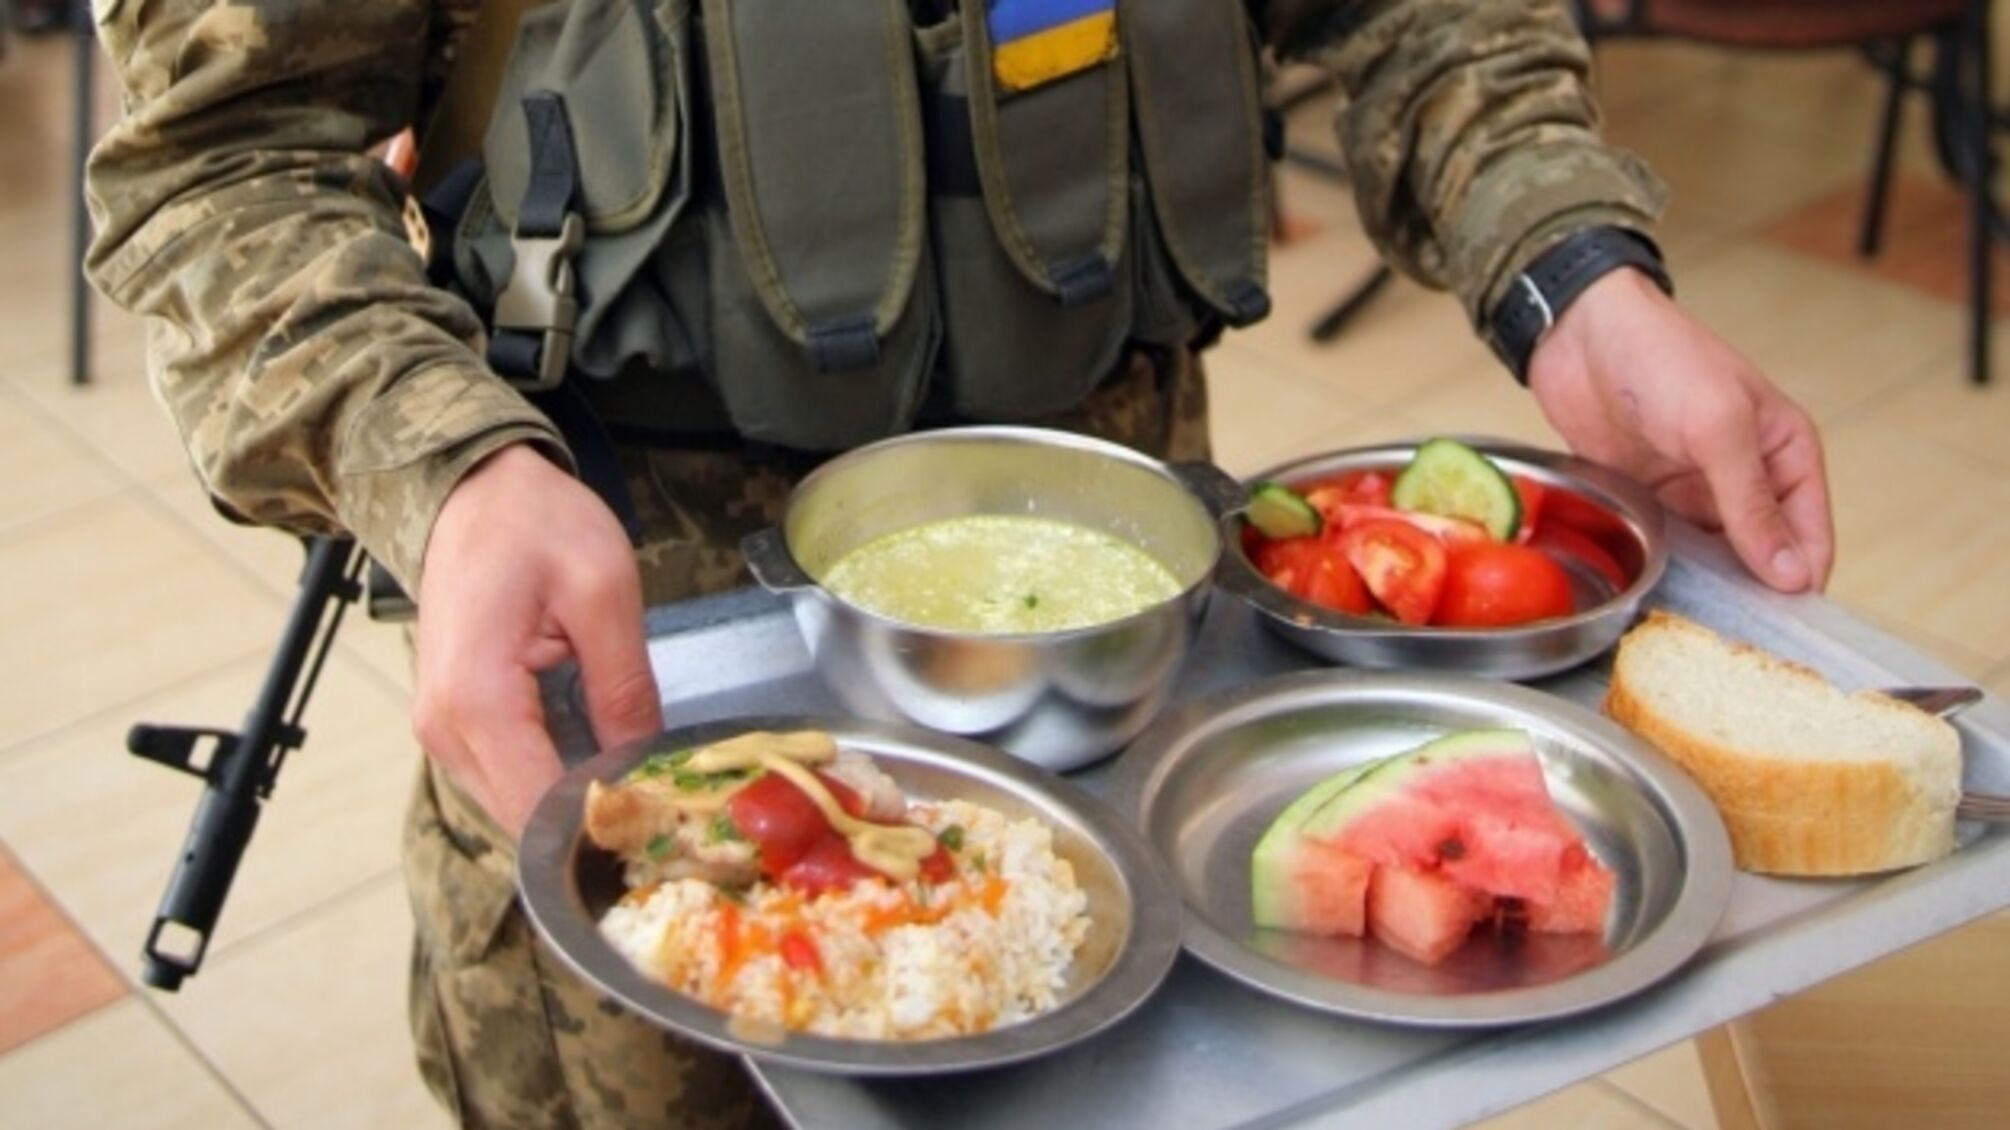 Українських військовослужбовців хотіли нагодувати 362 тоннами неякісних продуктів: у Міноборони заблокували тендер